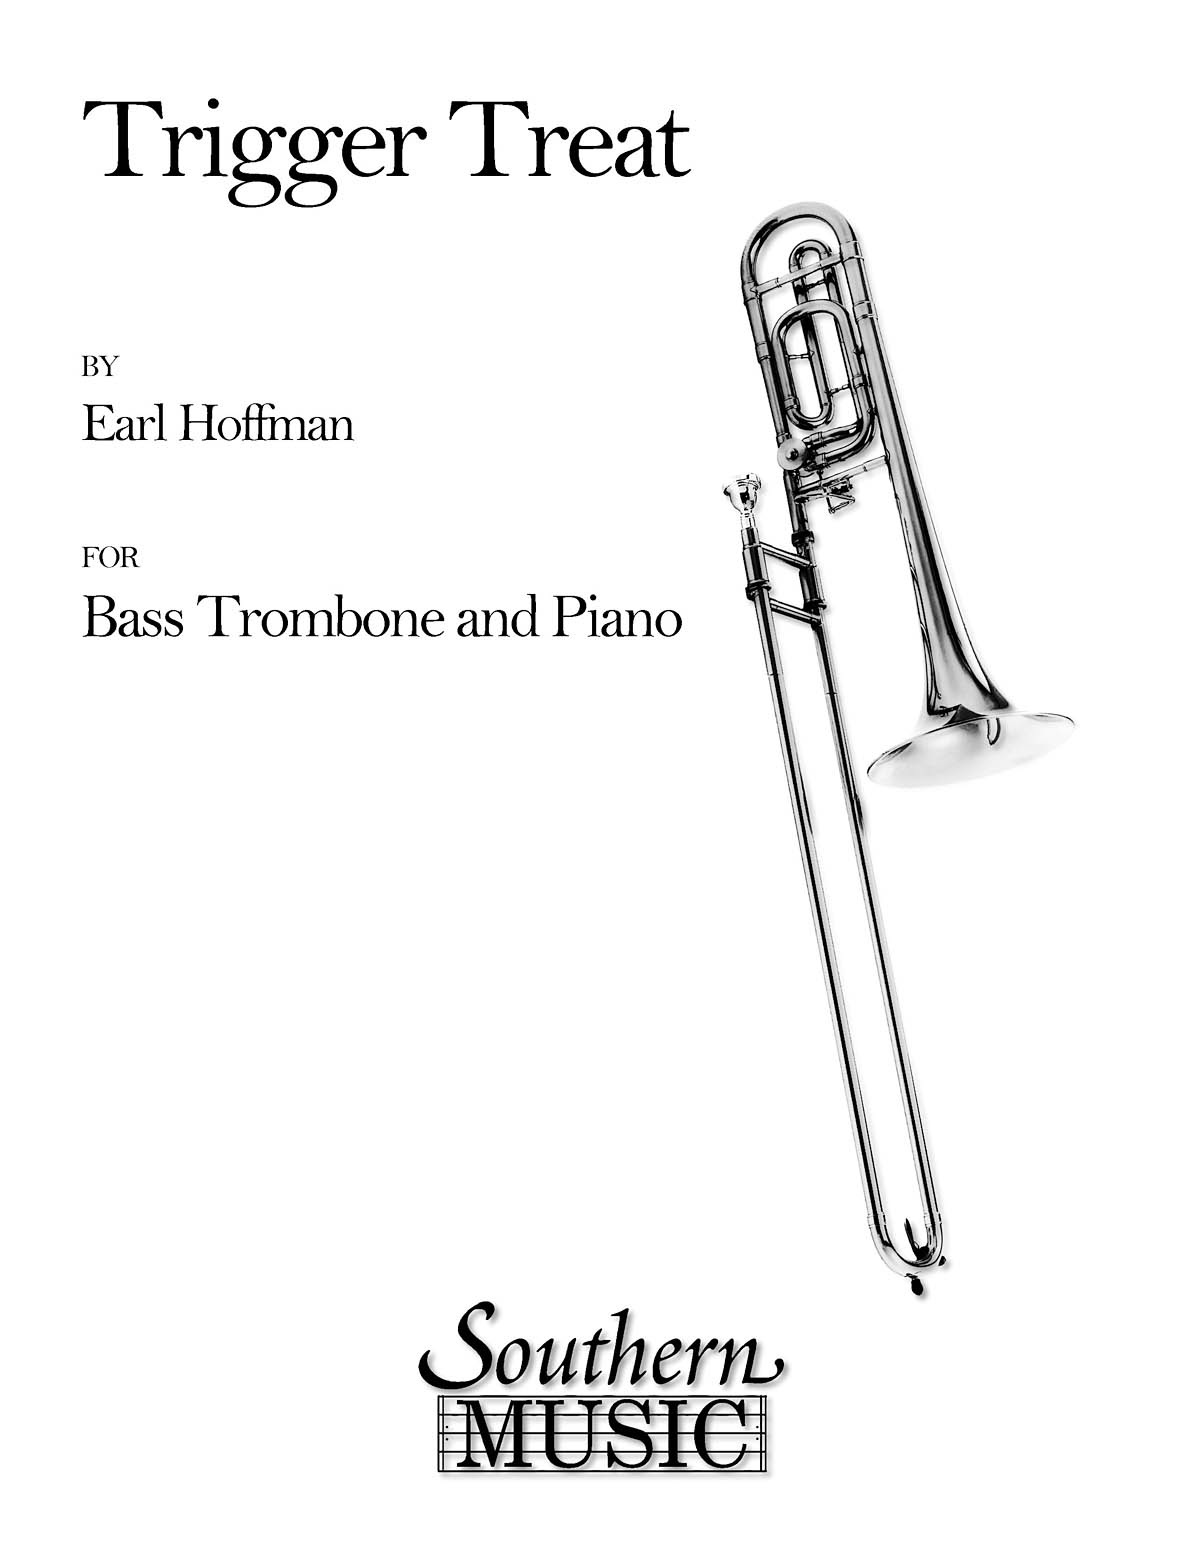 Trigger Treat - skladby pro trombon